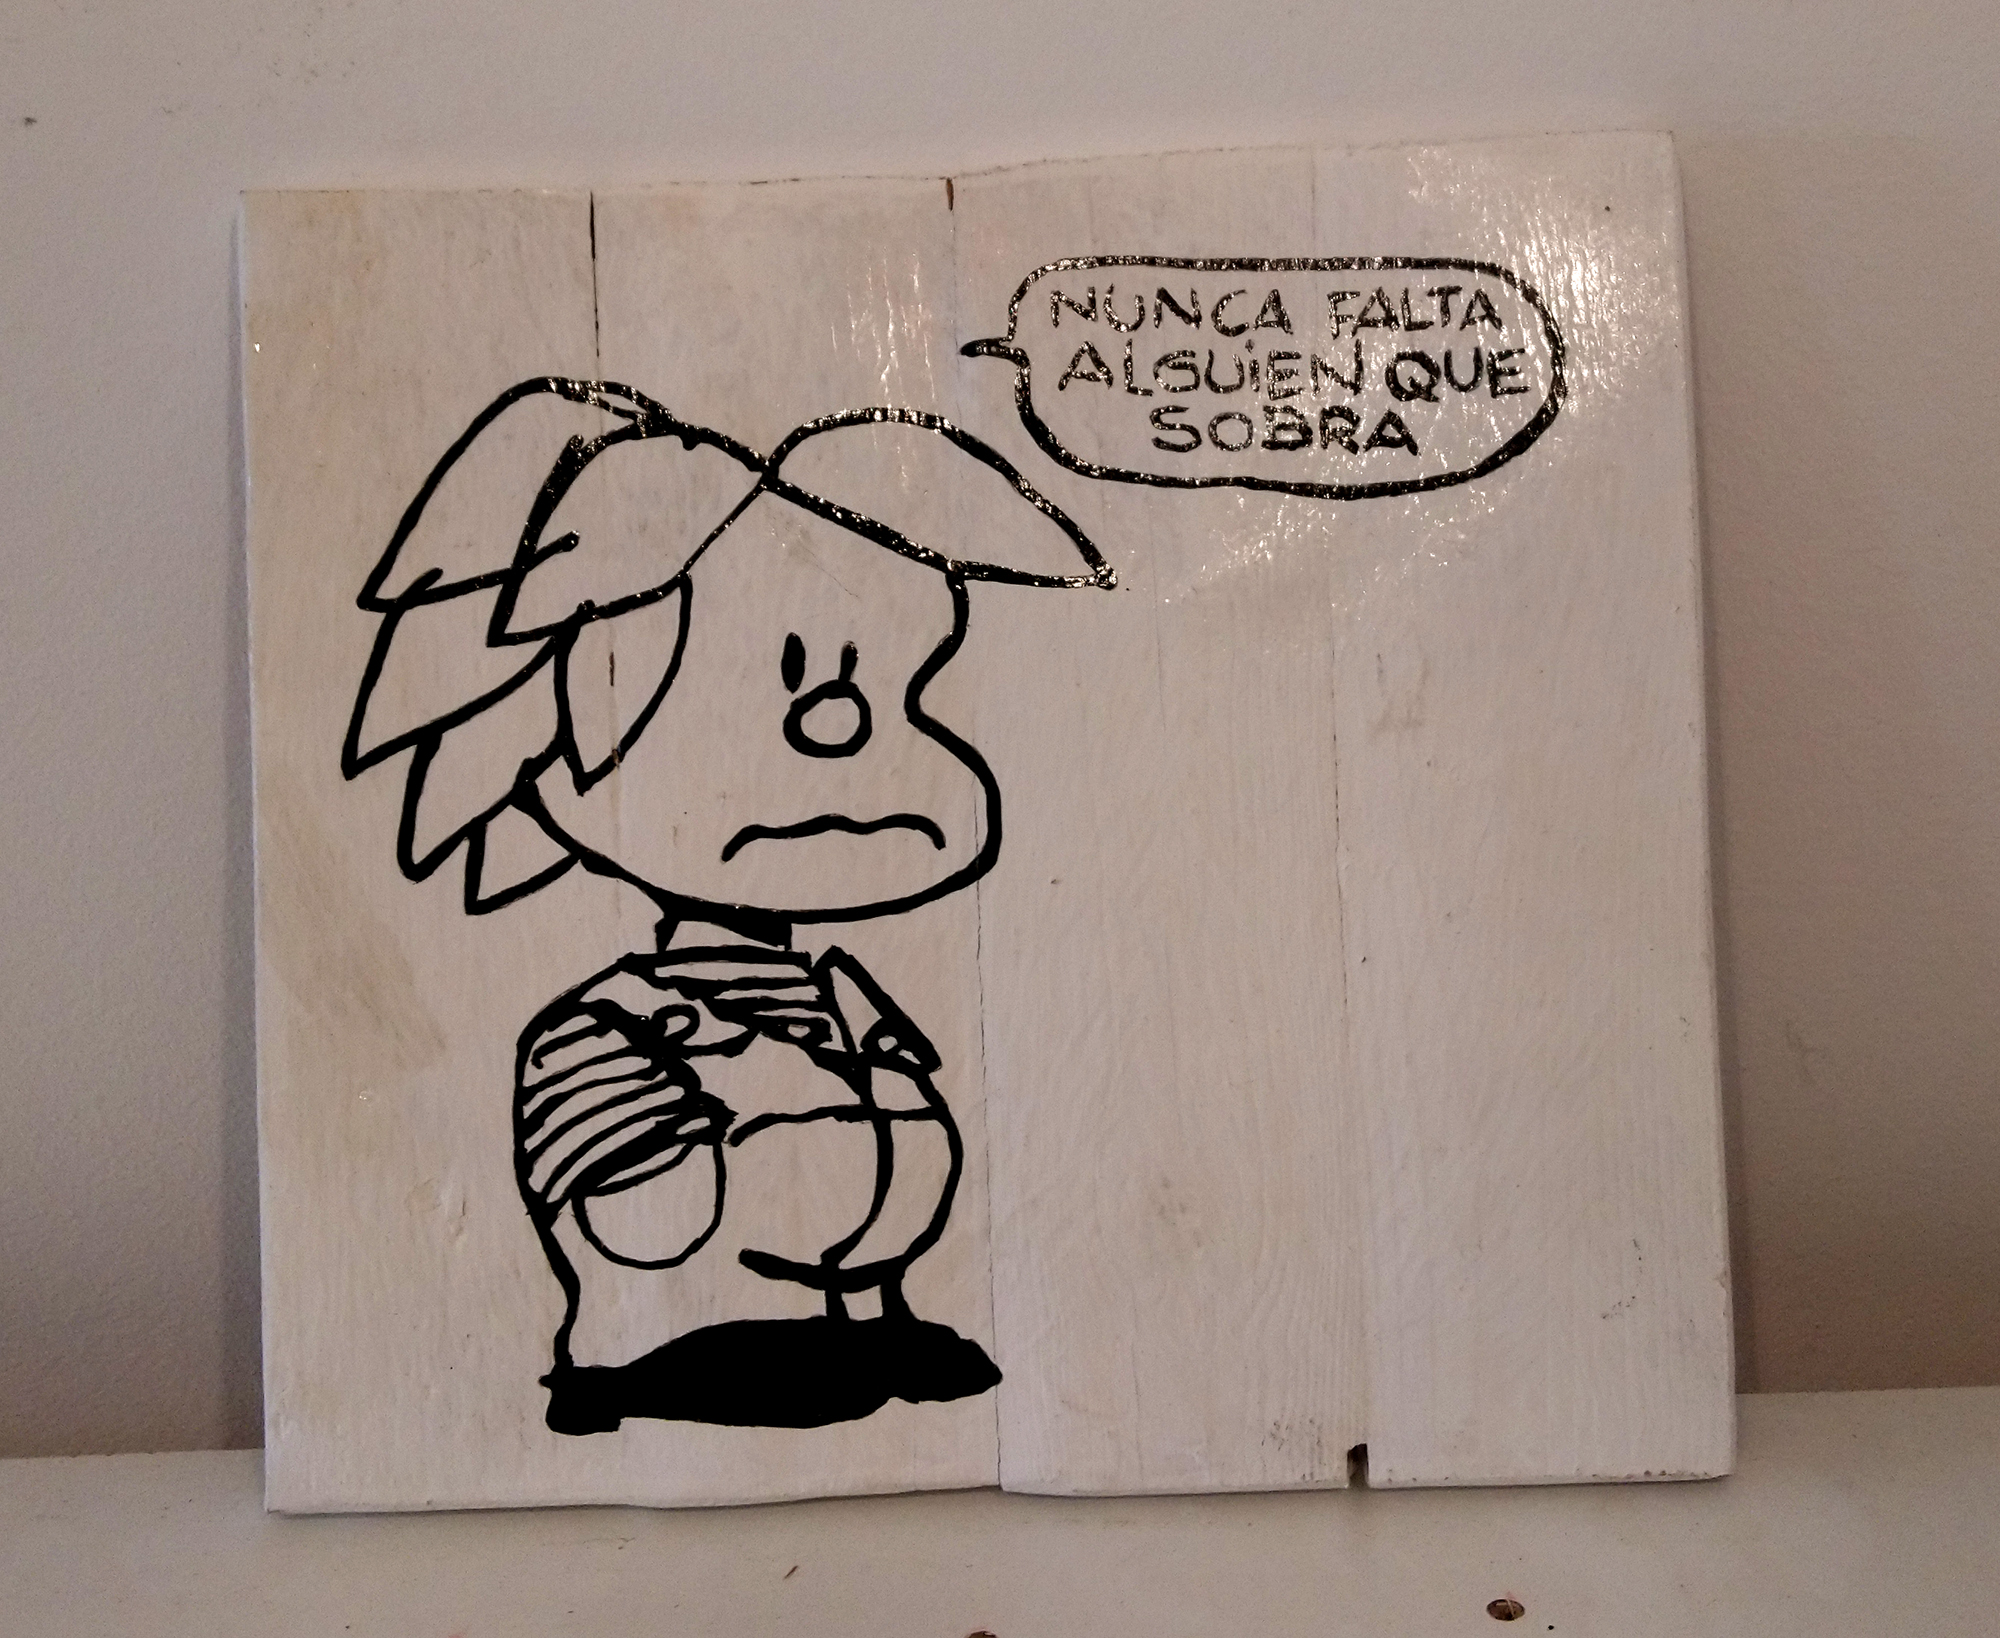 Cuadro Mafalda Miguelito nunca falta alguien que sobra